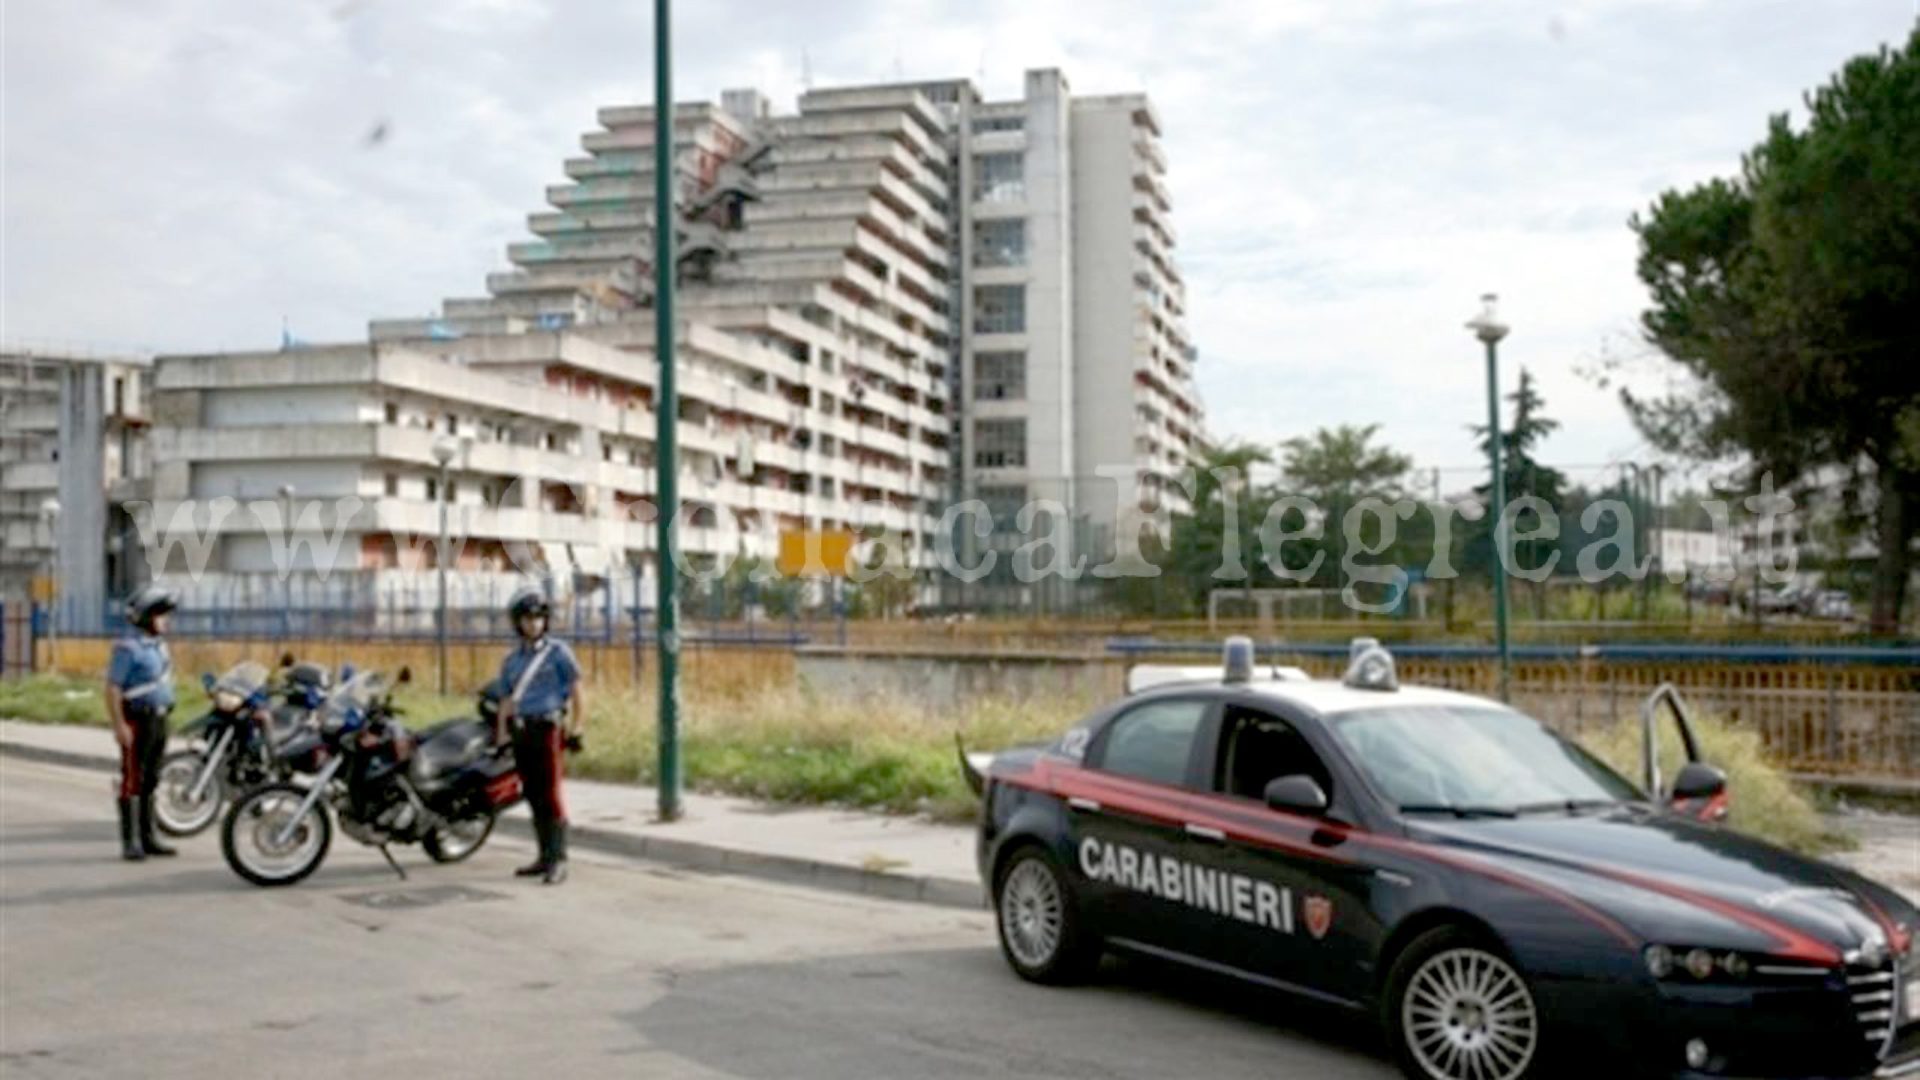 Minorenne in fuga da gennaio dopo un’evasione: catturato dai carabinieri